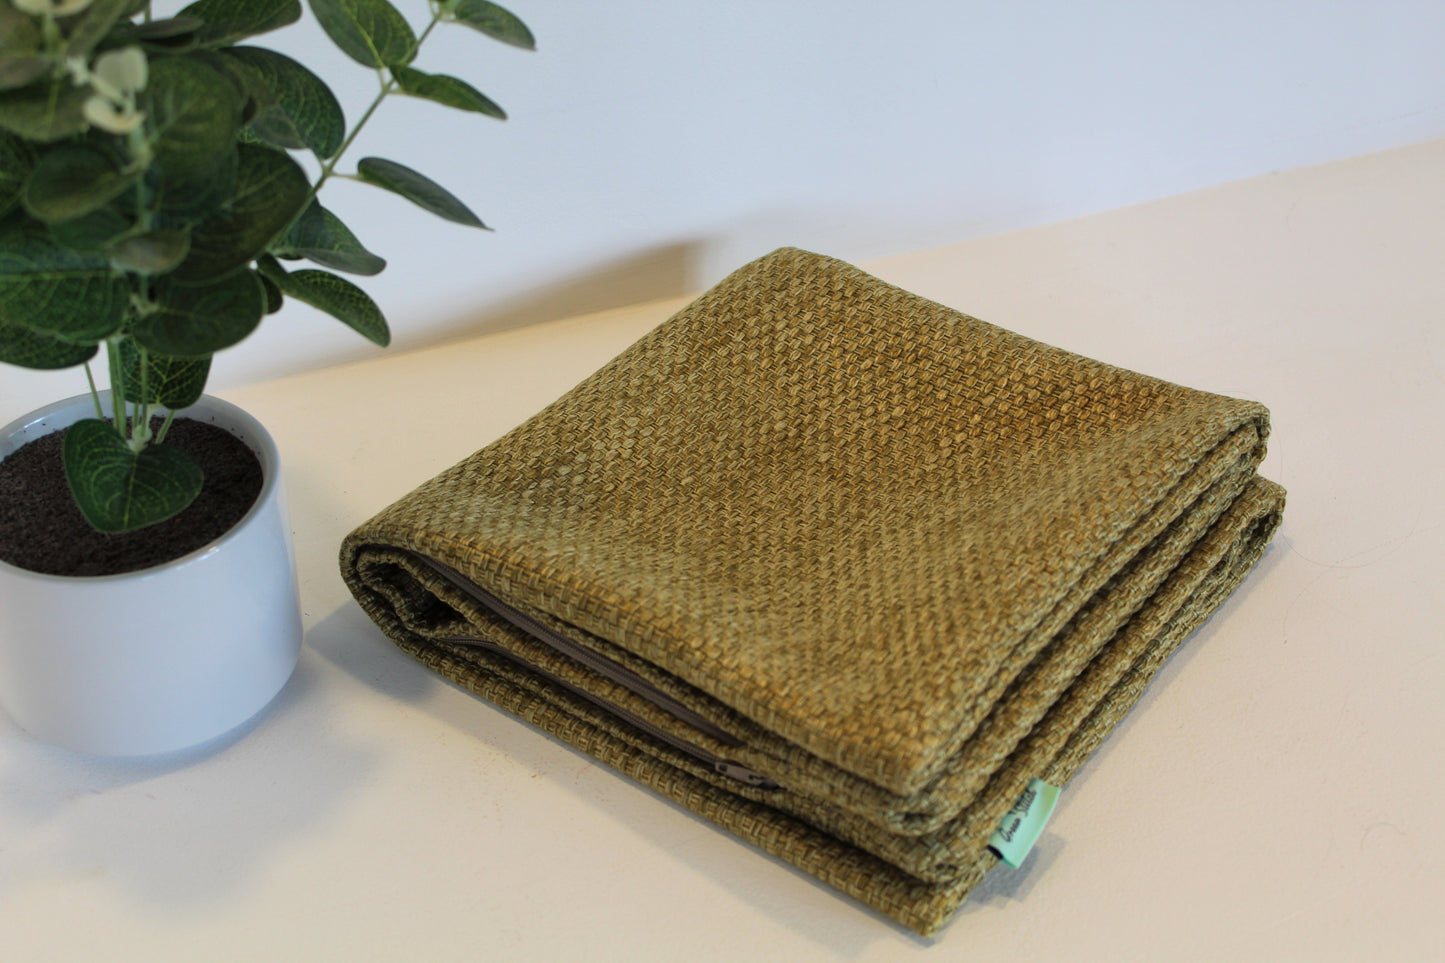 Green Woven - Cushion Cover - 45cm x 45cm